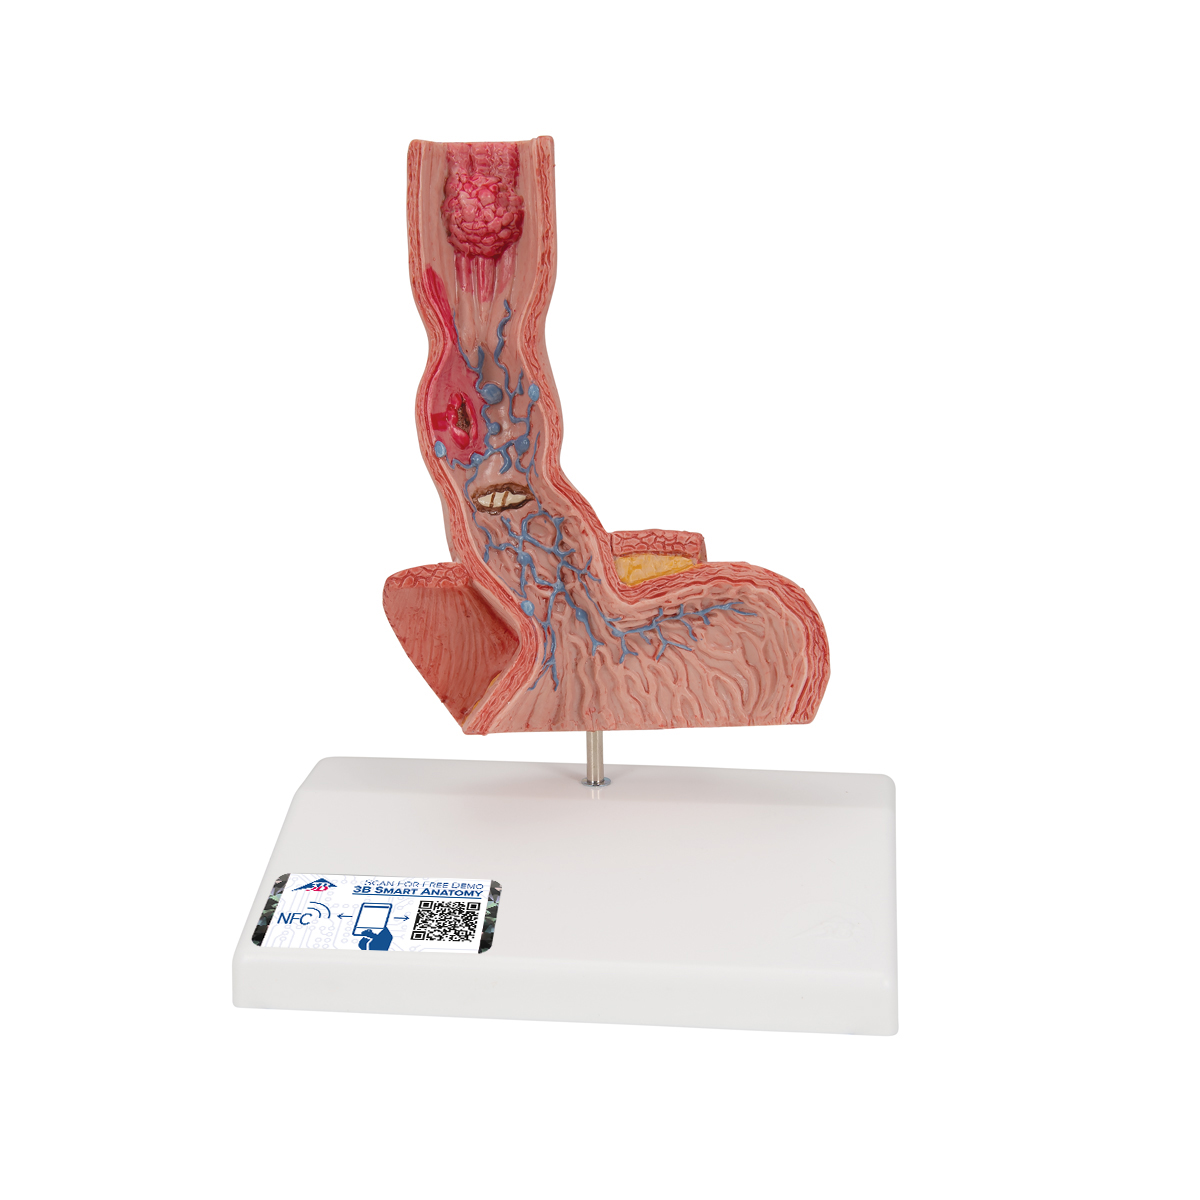 Pathologisches Modell der Speiseröhre - 3B Smart Anatomy, Bestellnummer 1000305, K18, 3B Scientific